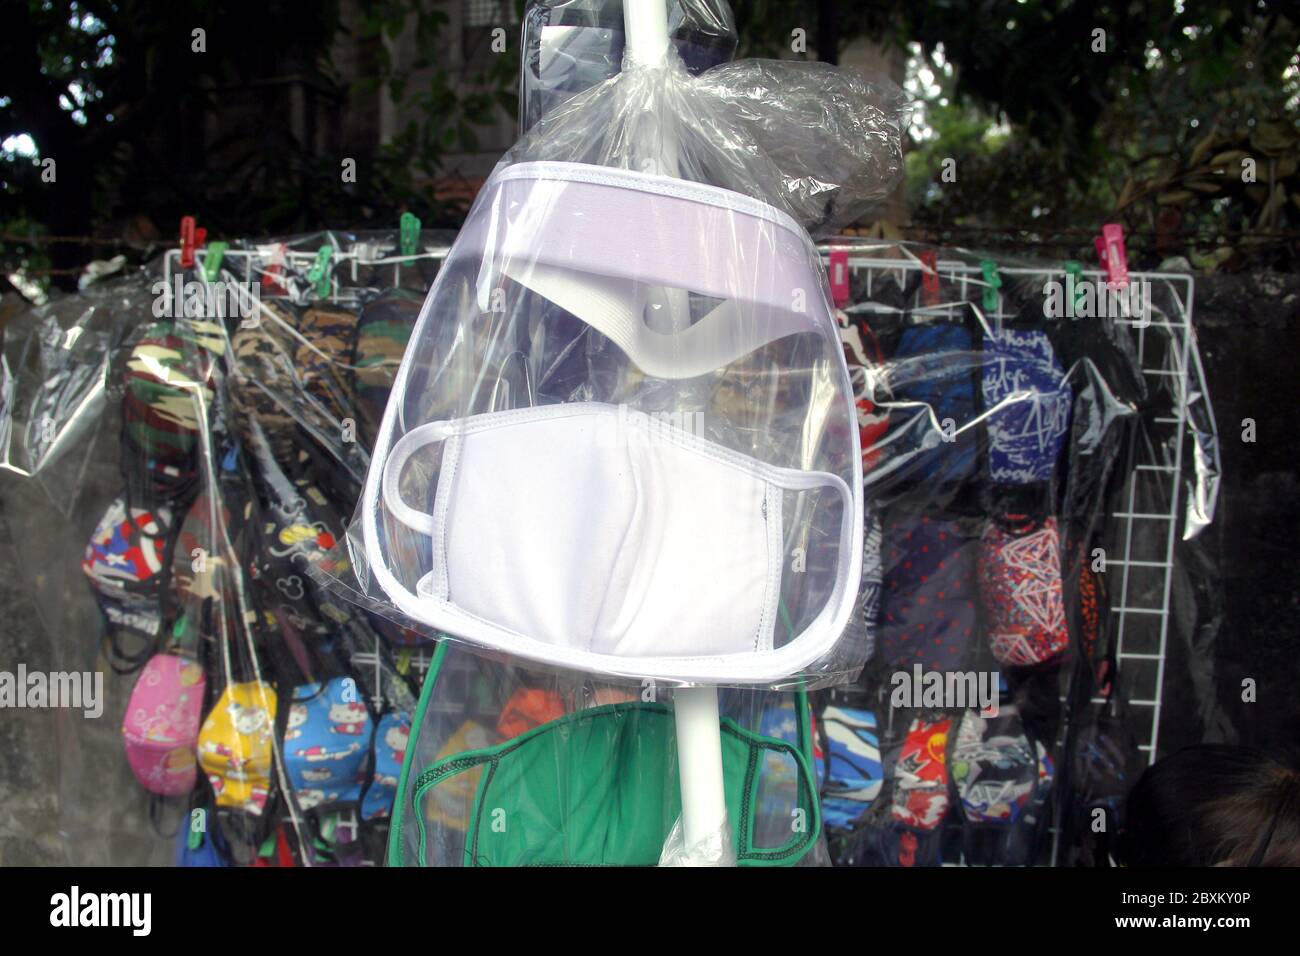 Antipolo City, Philippines - 1 juin 2020 : masque facial lavable assorti, masque tubulaire, masque facial et gants de moto exposés à un stand a improvisé Banque D'Images